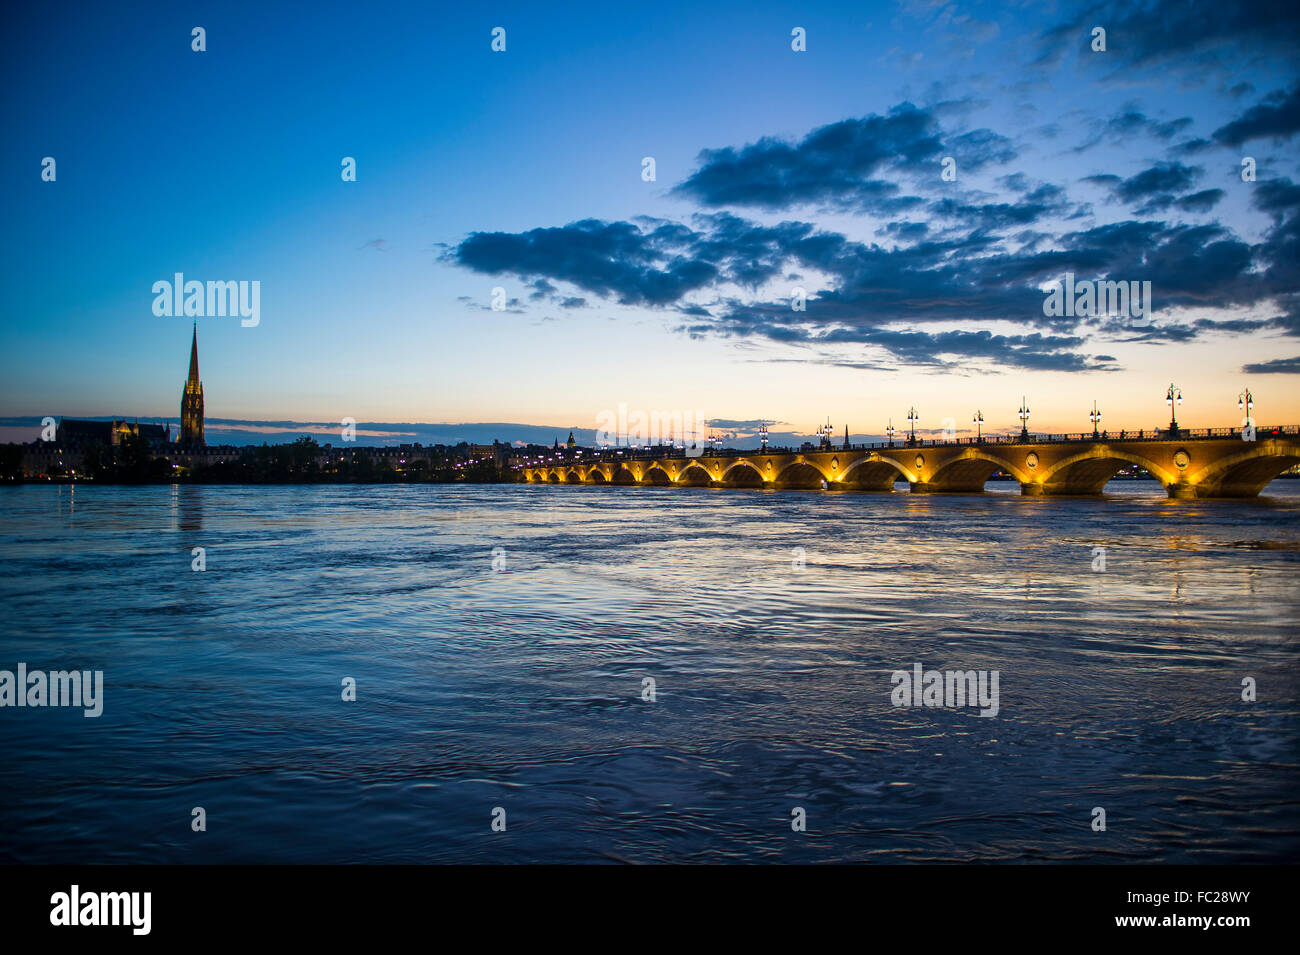 Pont de pierre historique, pont au-dessus de la Garonne, au crépuscule, Bordeaux, France Banque D'Images